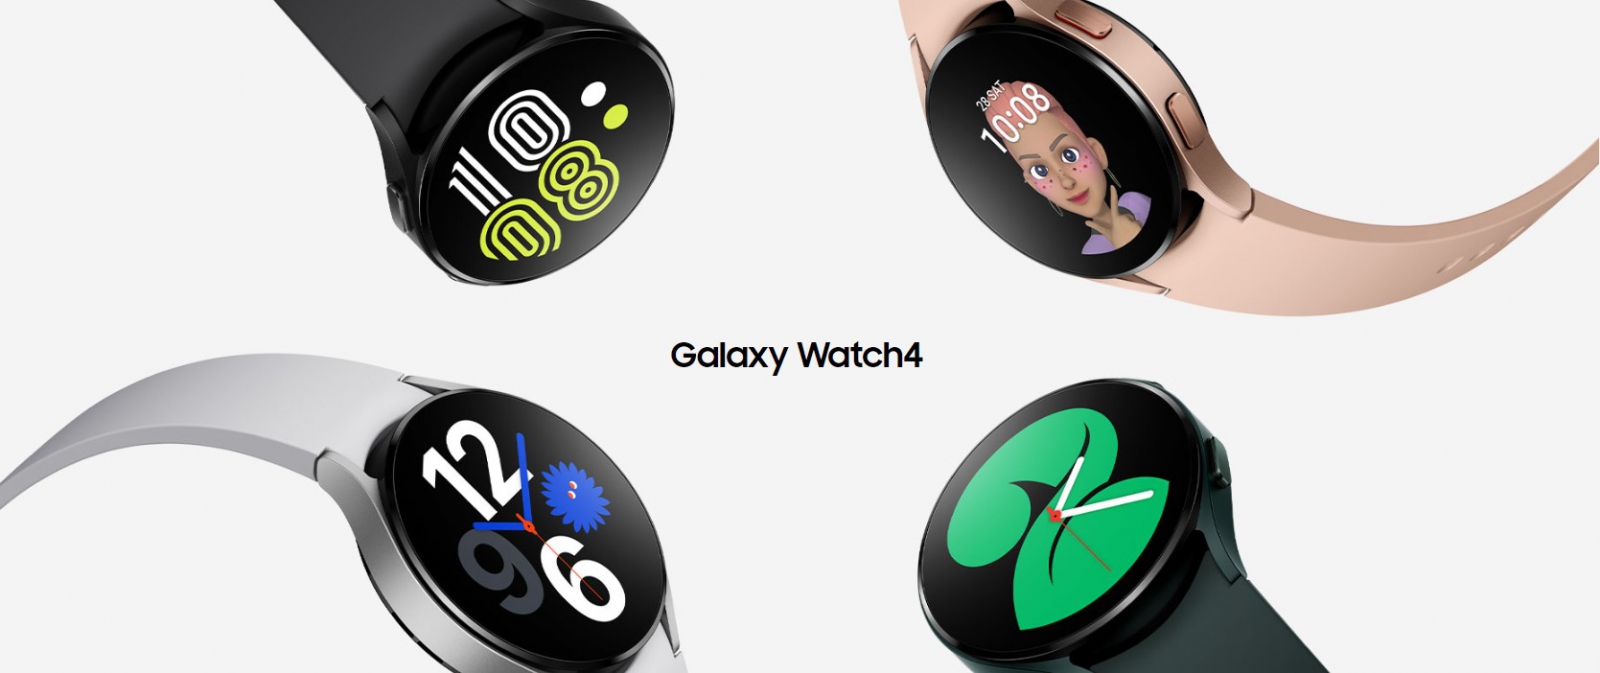 【機型介紹】量血壓、ECG心電圖隨時測！三星Galaxy Watch 4手錶價格/重點功能看這篇！